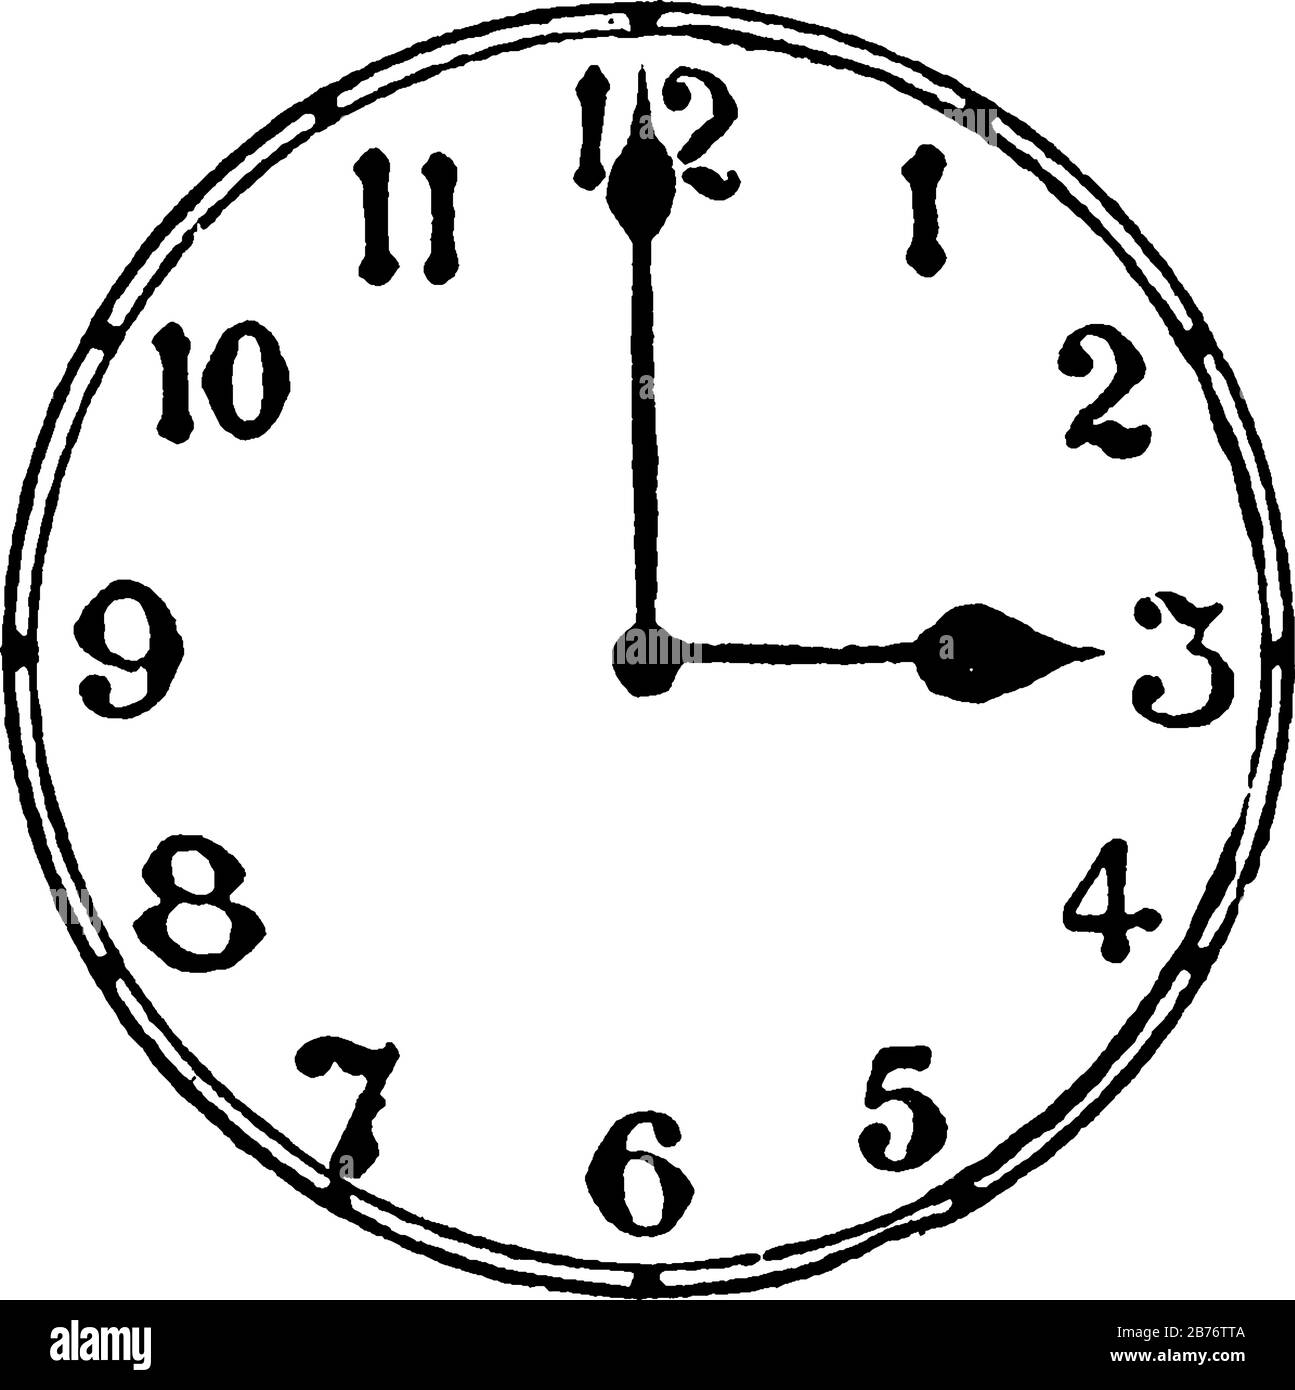 es una imagen del reloj que dice que es de 3 en punto, mostrando tres  diferentes